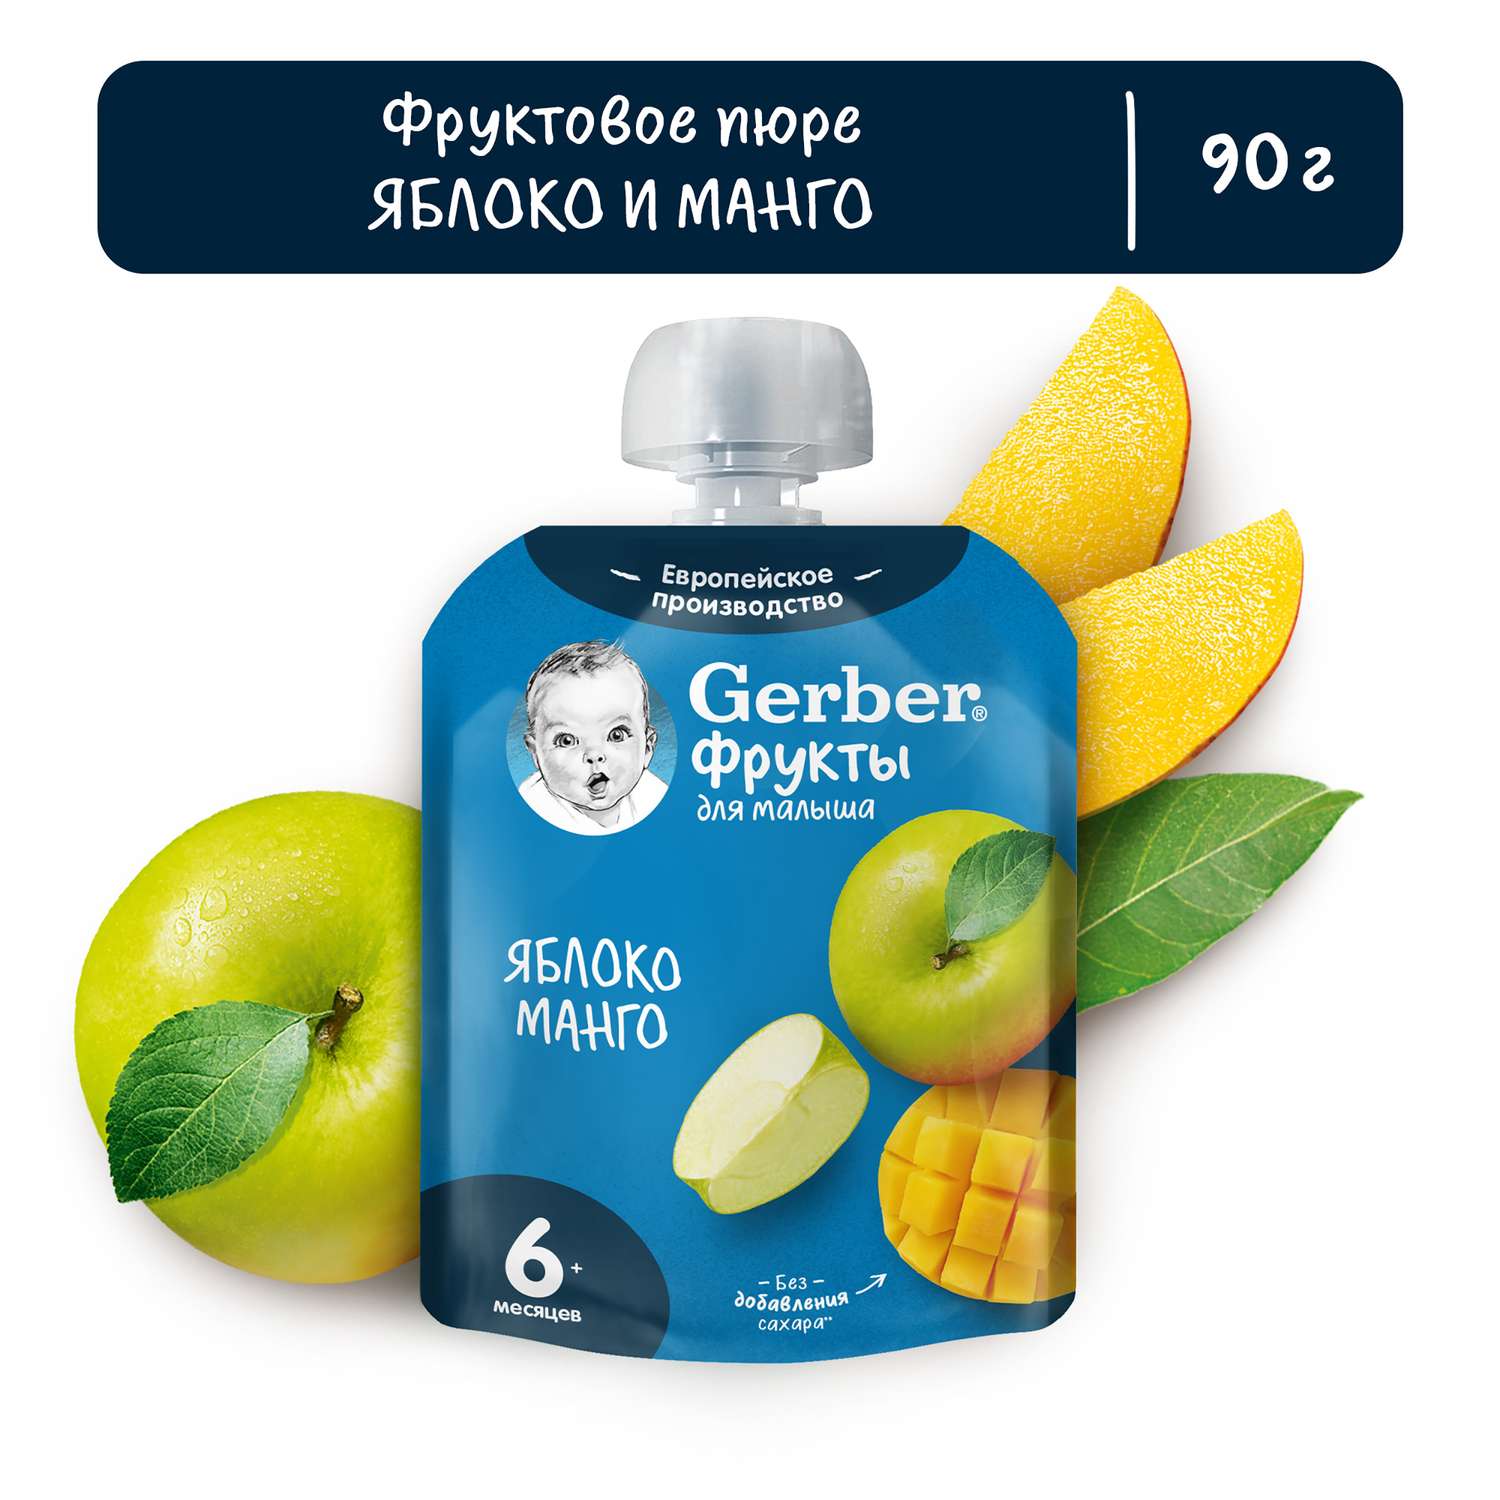 Пюре Gerber яблоко-манго 90г с 6месяцев - фото 1